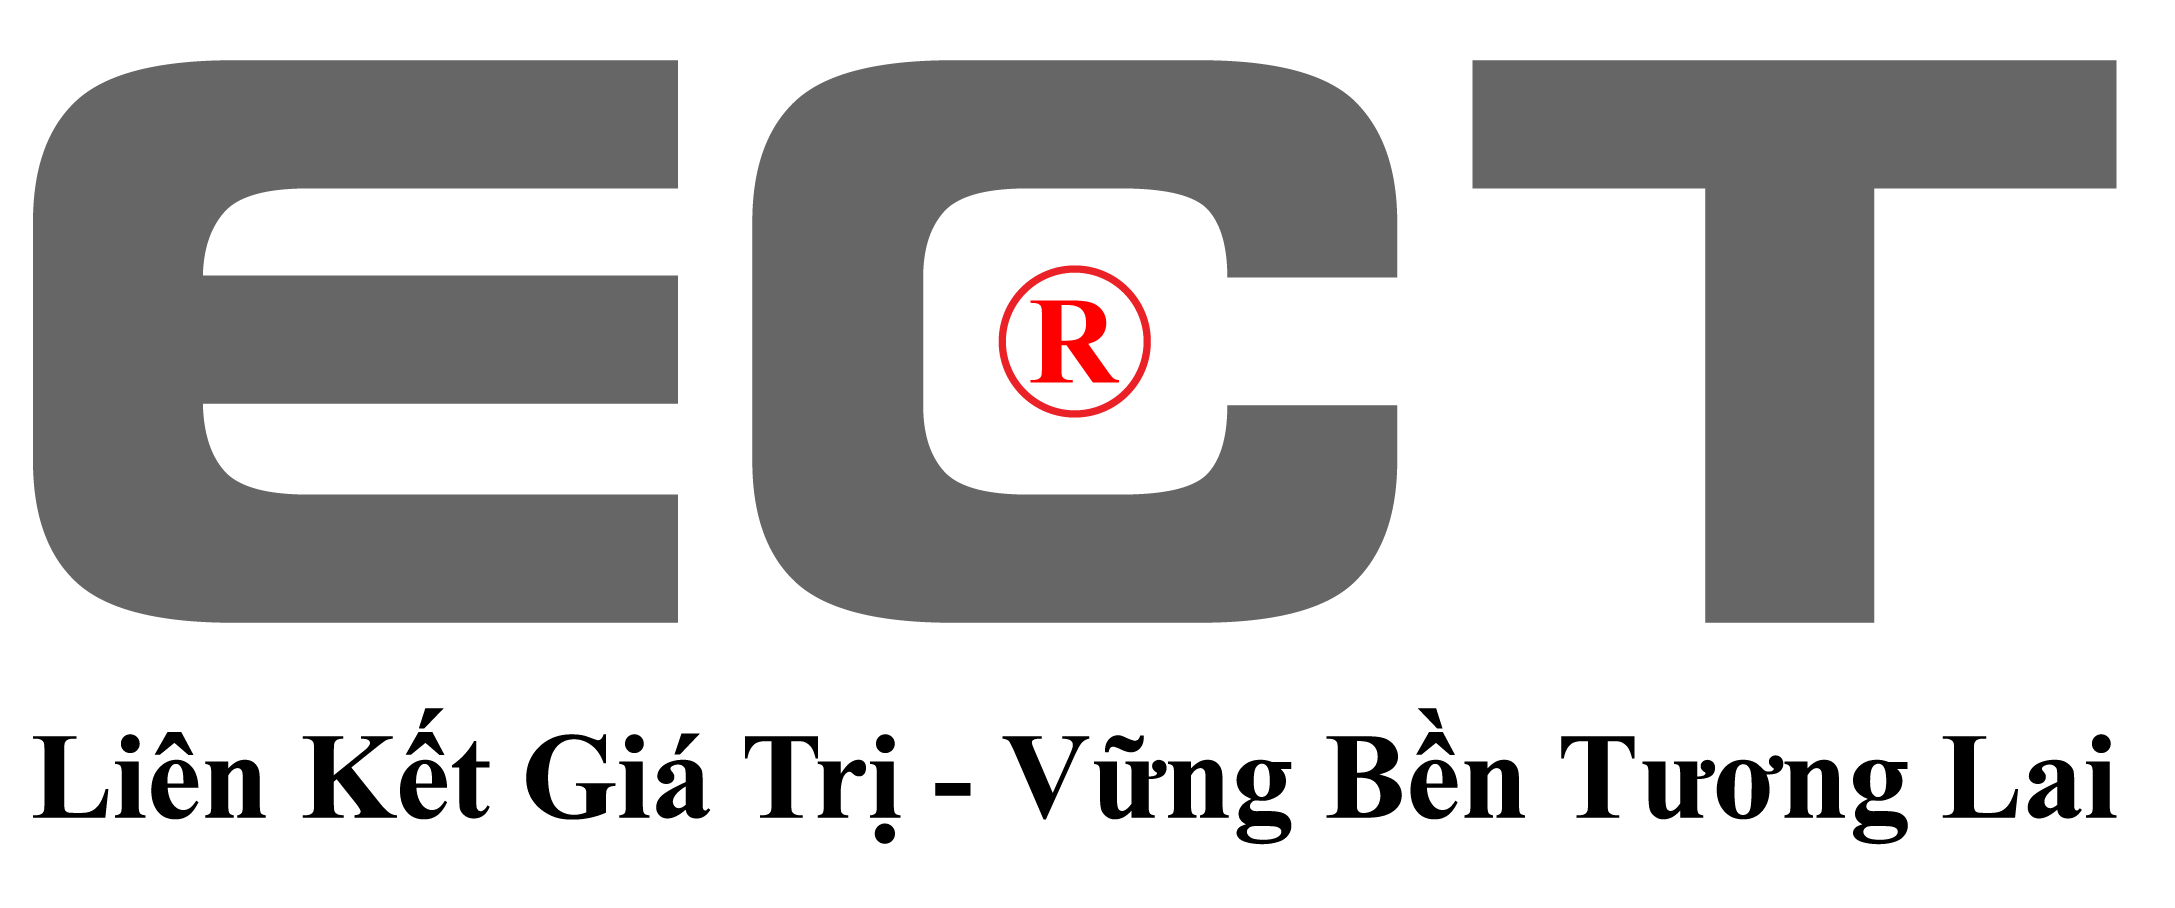 logo-03.png